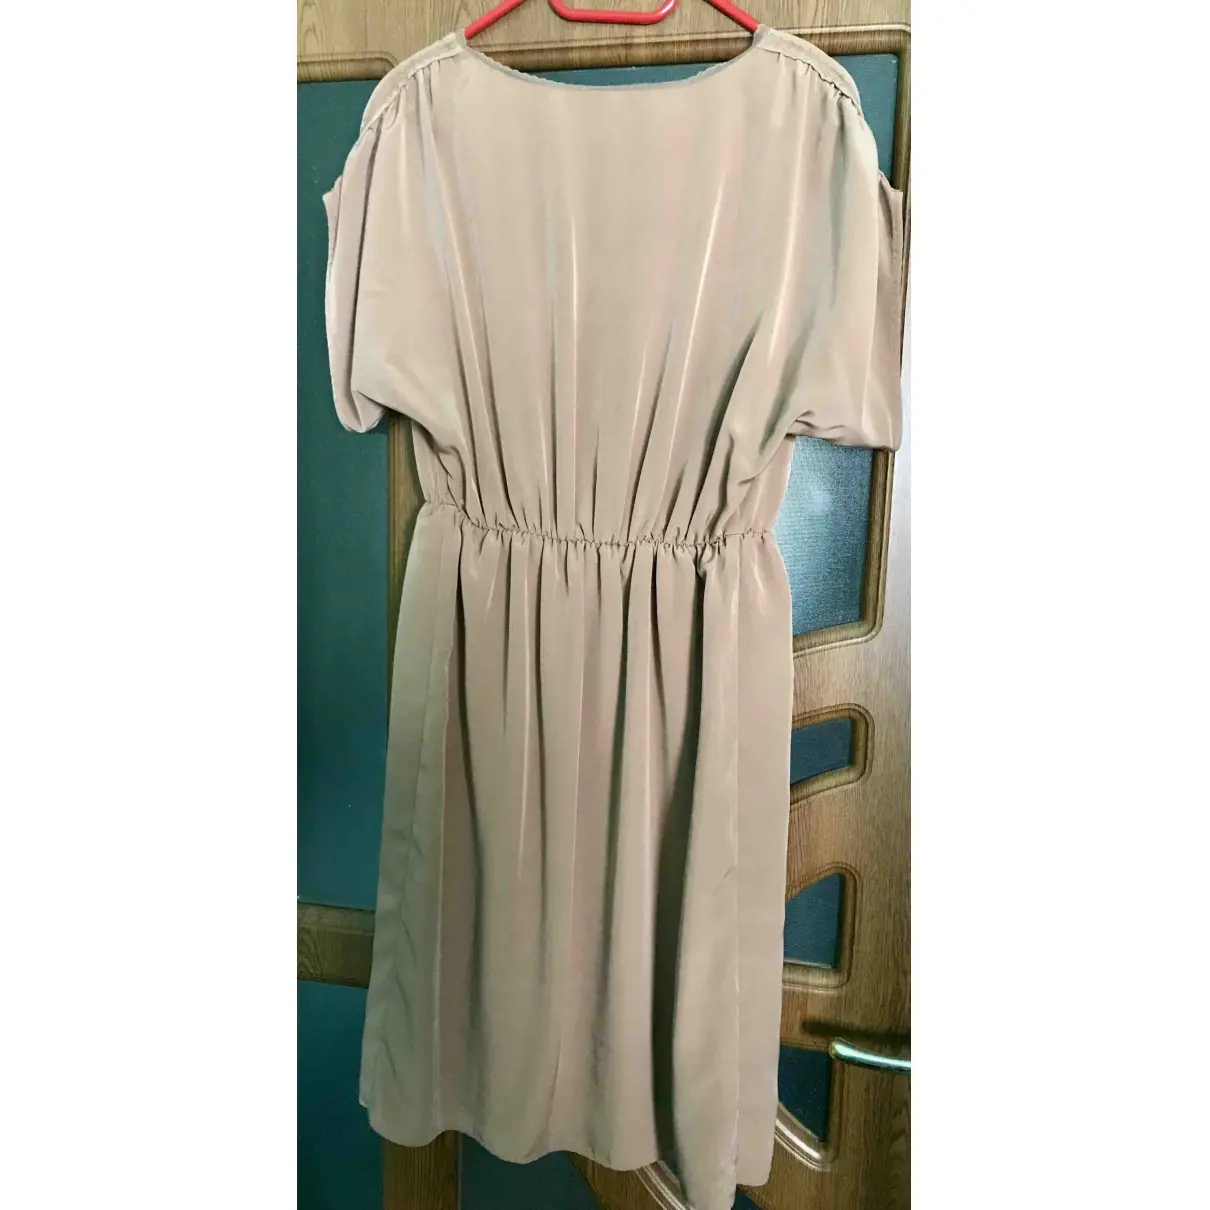 Buy ipekyol Mid-length dress online